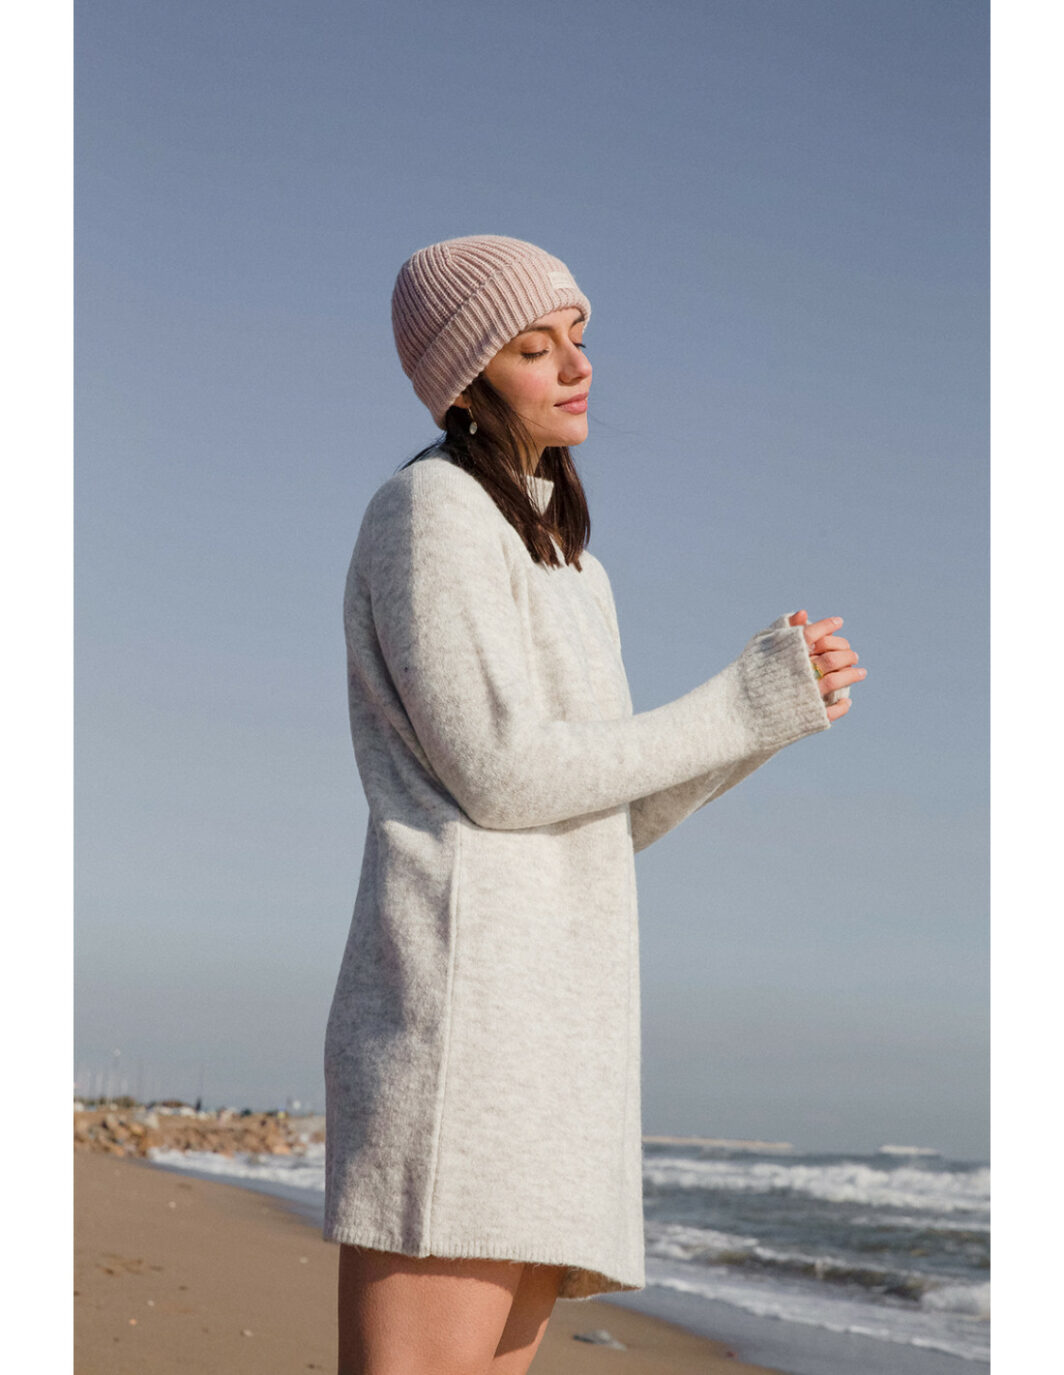 robe KUNZI MUS&BOMBON contenant laine matière naturelle courte grise, marque espagnole éco-friendly